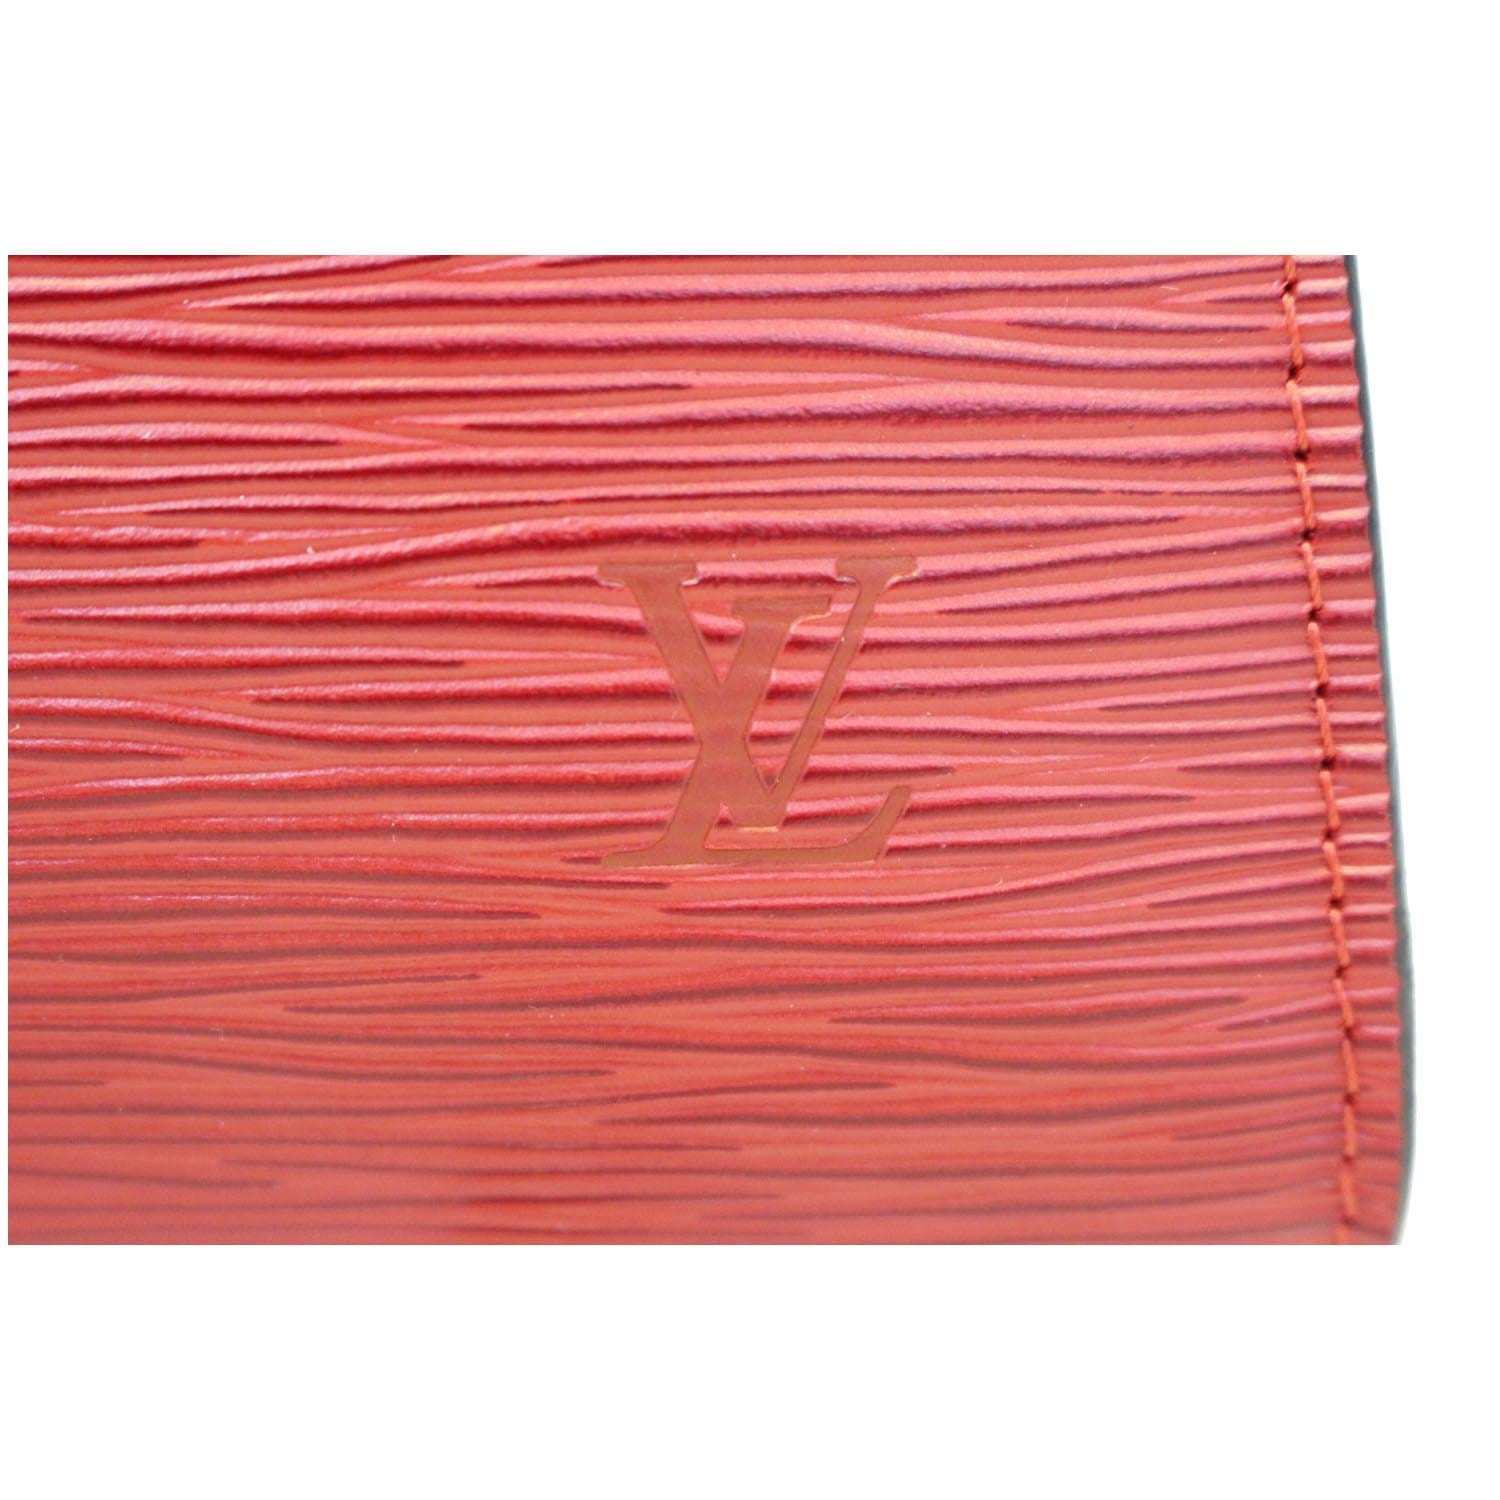 Louis Vuitton Deco Envelope 5lva62 Red Epi Leather Clutch, Louis Vuitton